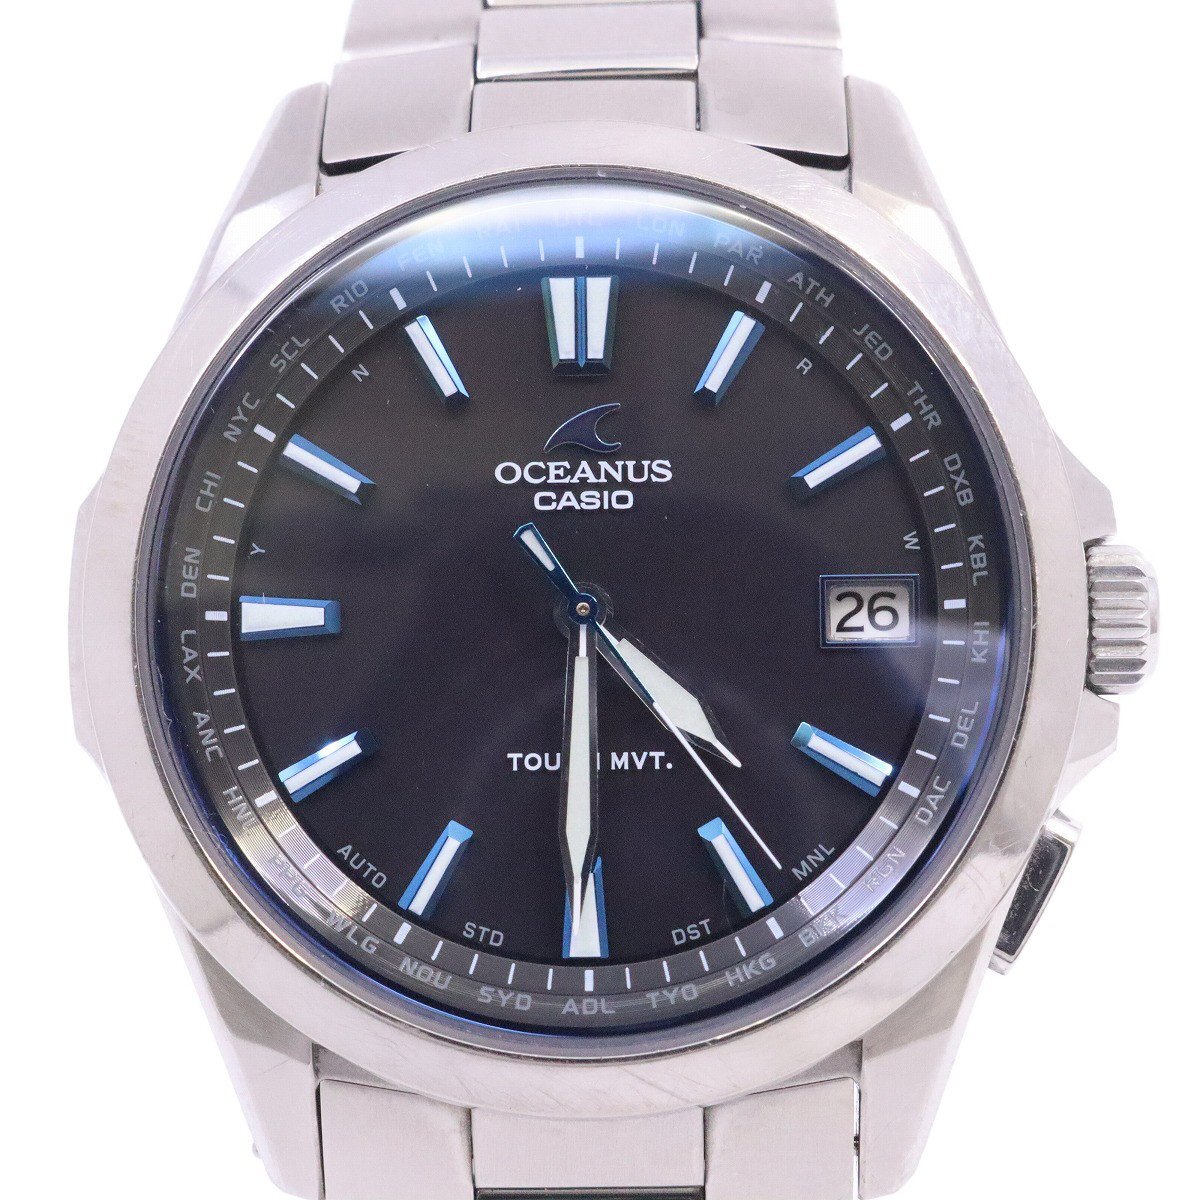  Casio Oceanus Classic solar radio wave men's wristwatch titanium black face original belt OCW-S100-1AJF[... pawnshop ]